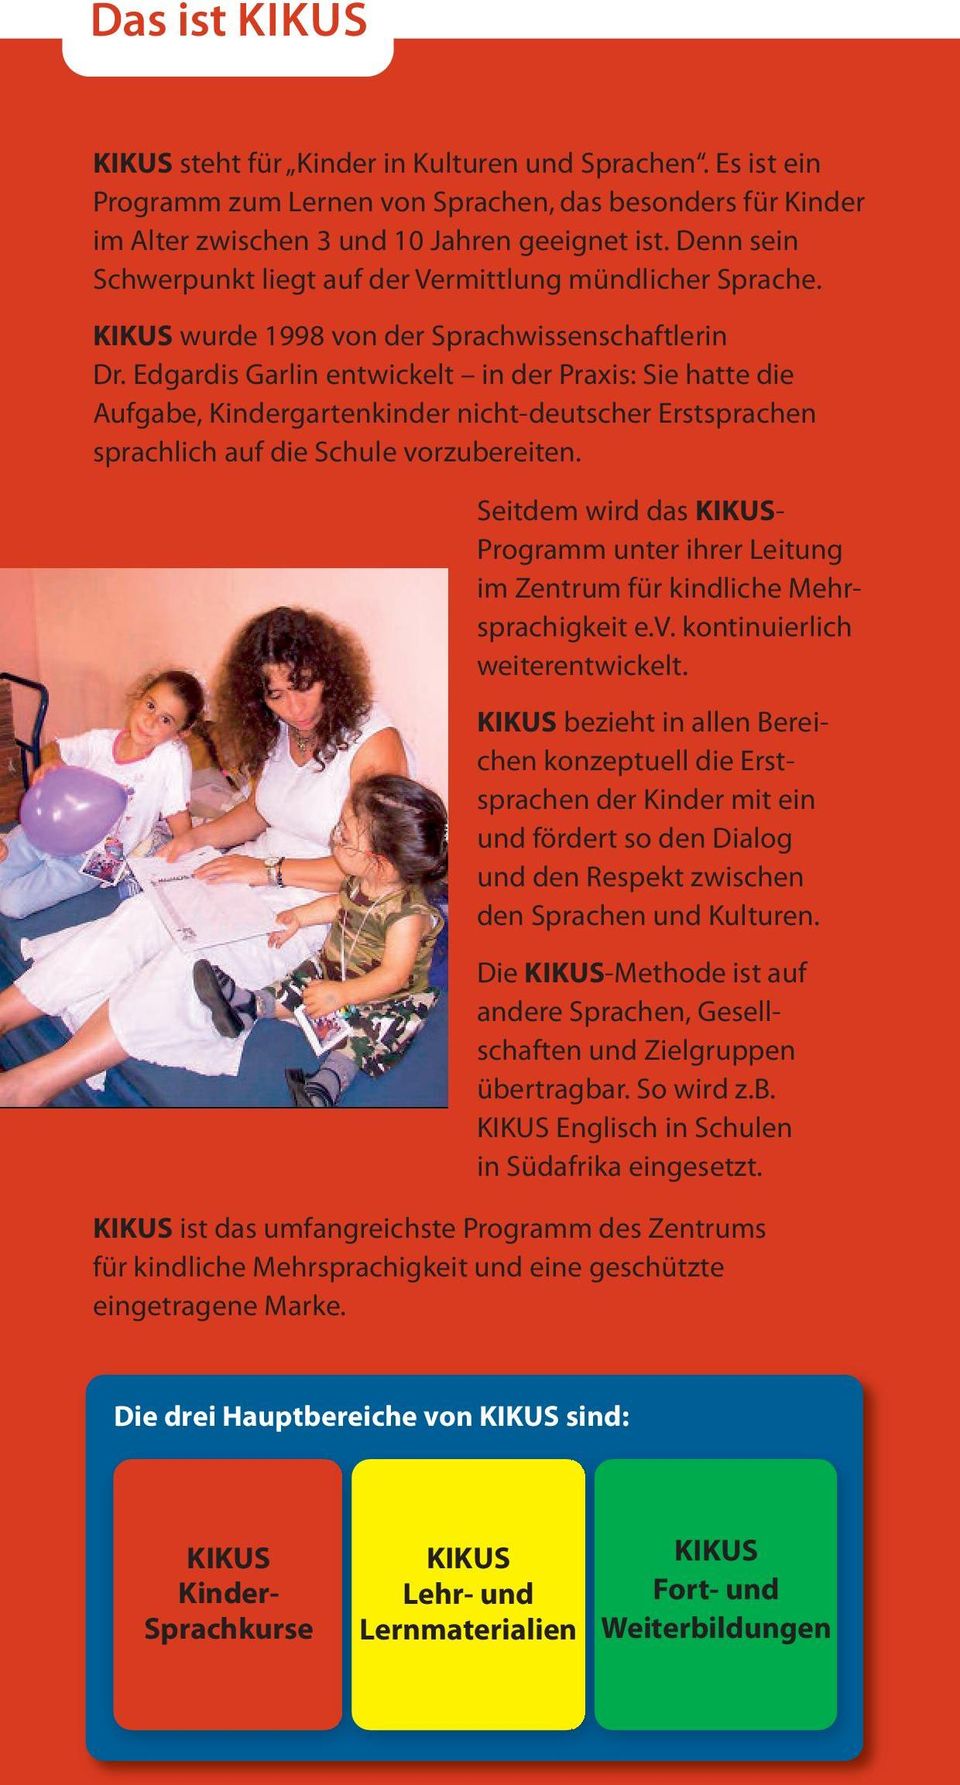 Edgardis Garlin entwickelt in der Praxis: Sie hatte die Aufgabe, Kindergartenkinder nicht-deutscher Erstsprachen sprachlich auf die Schule vorzubereiten.